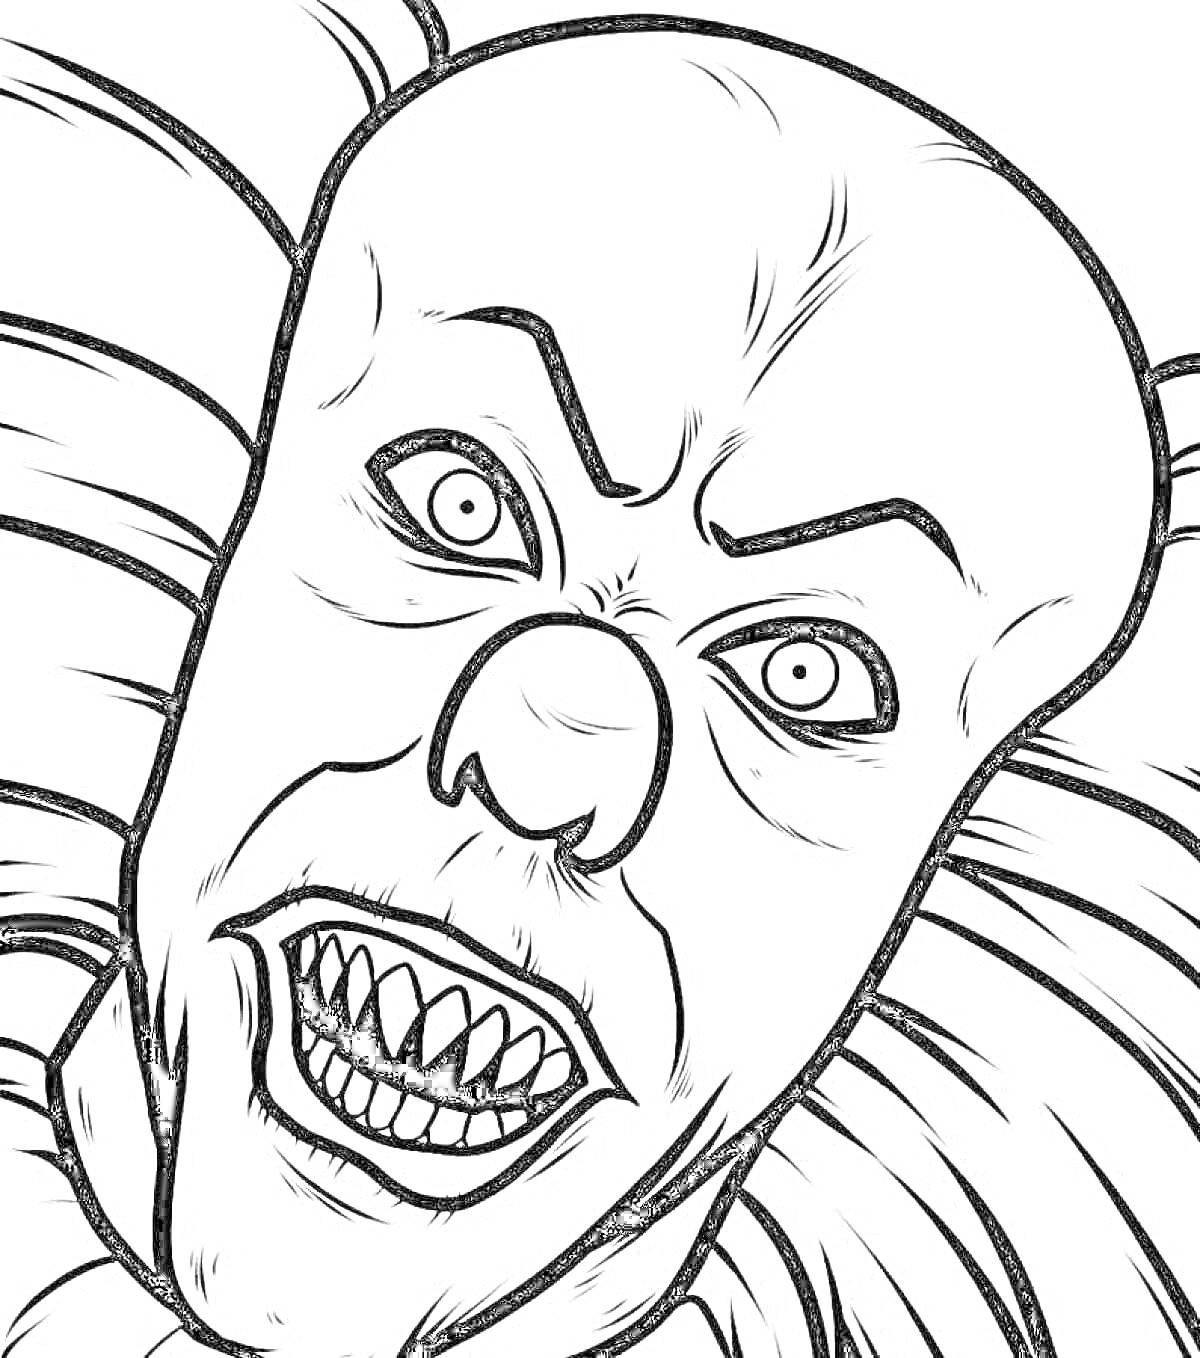 лицо жуткого клоуна с острыми зубами и выпученными глазами, окружённое воротником с рюшами